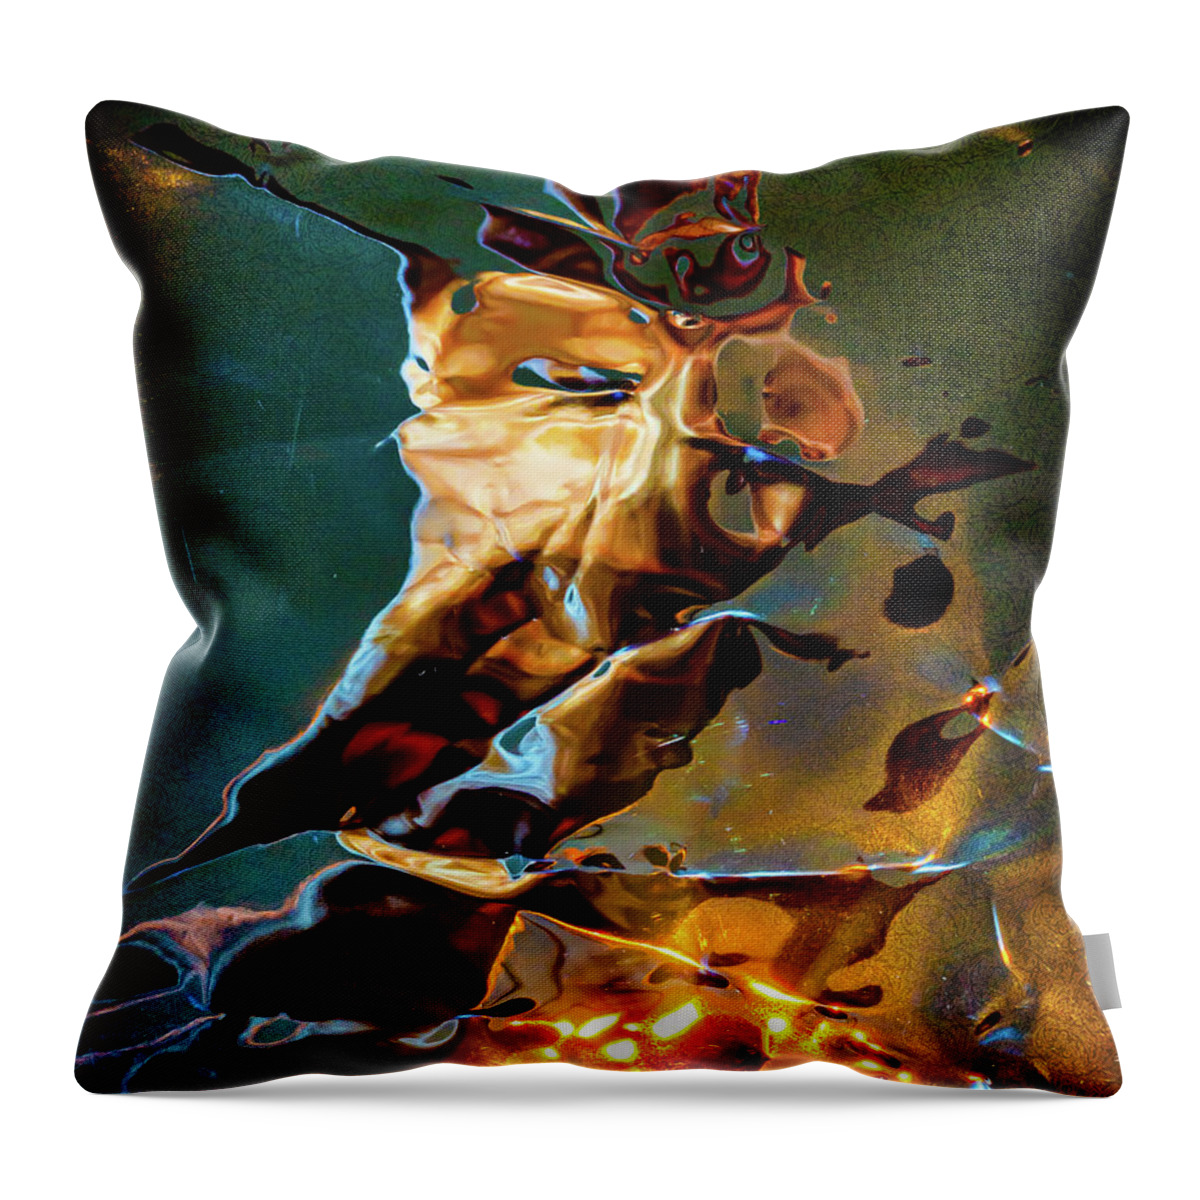 Abstract Throw Pillow featuring the digital art The Firestarter by Liquid Eye